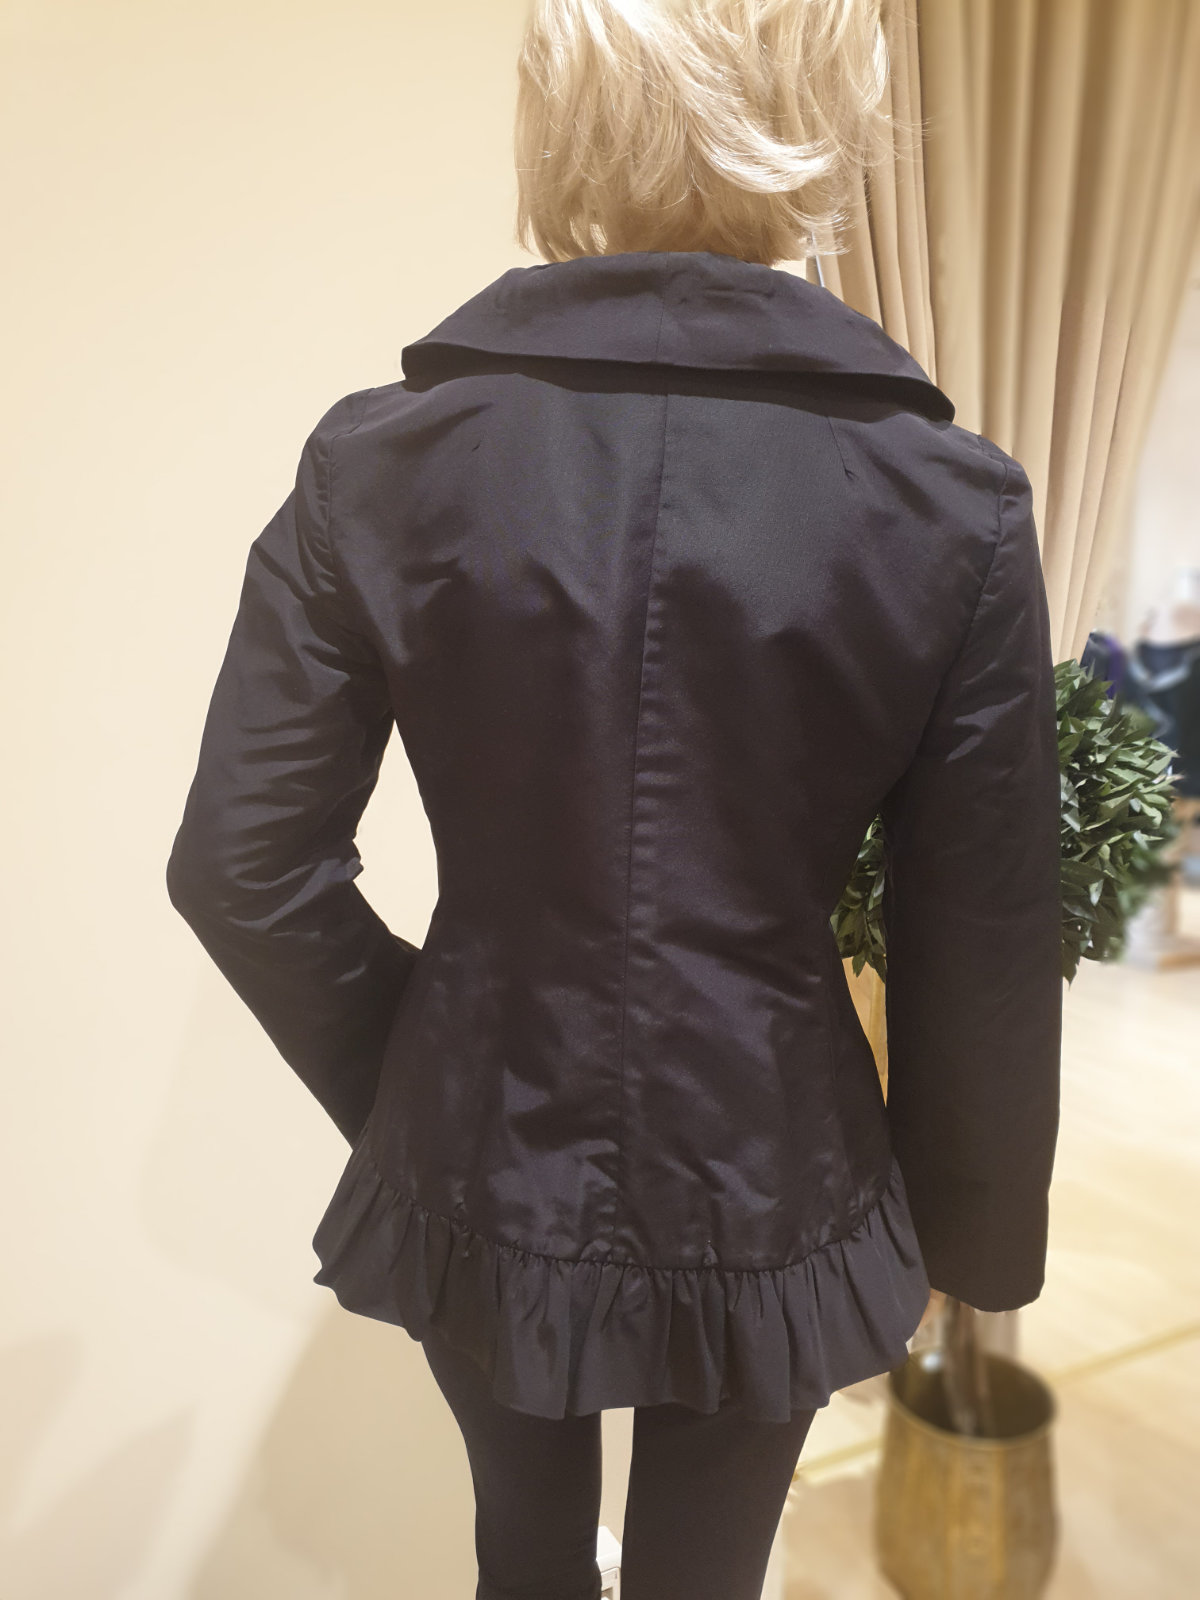 Dolce & Gabbana Jacke, kurzer Damenmantel, in schwarz, mit Rüschen am Ausschnitt, in Größe 40, von hinten.